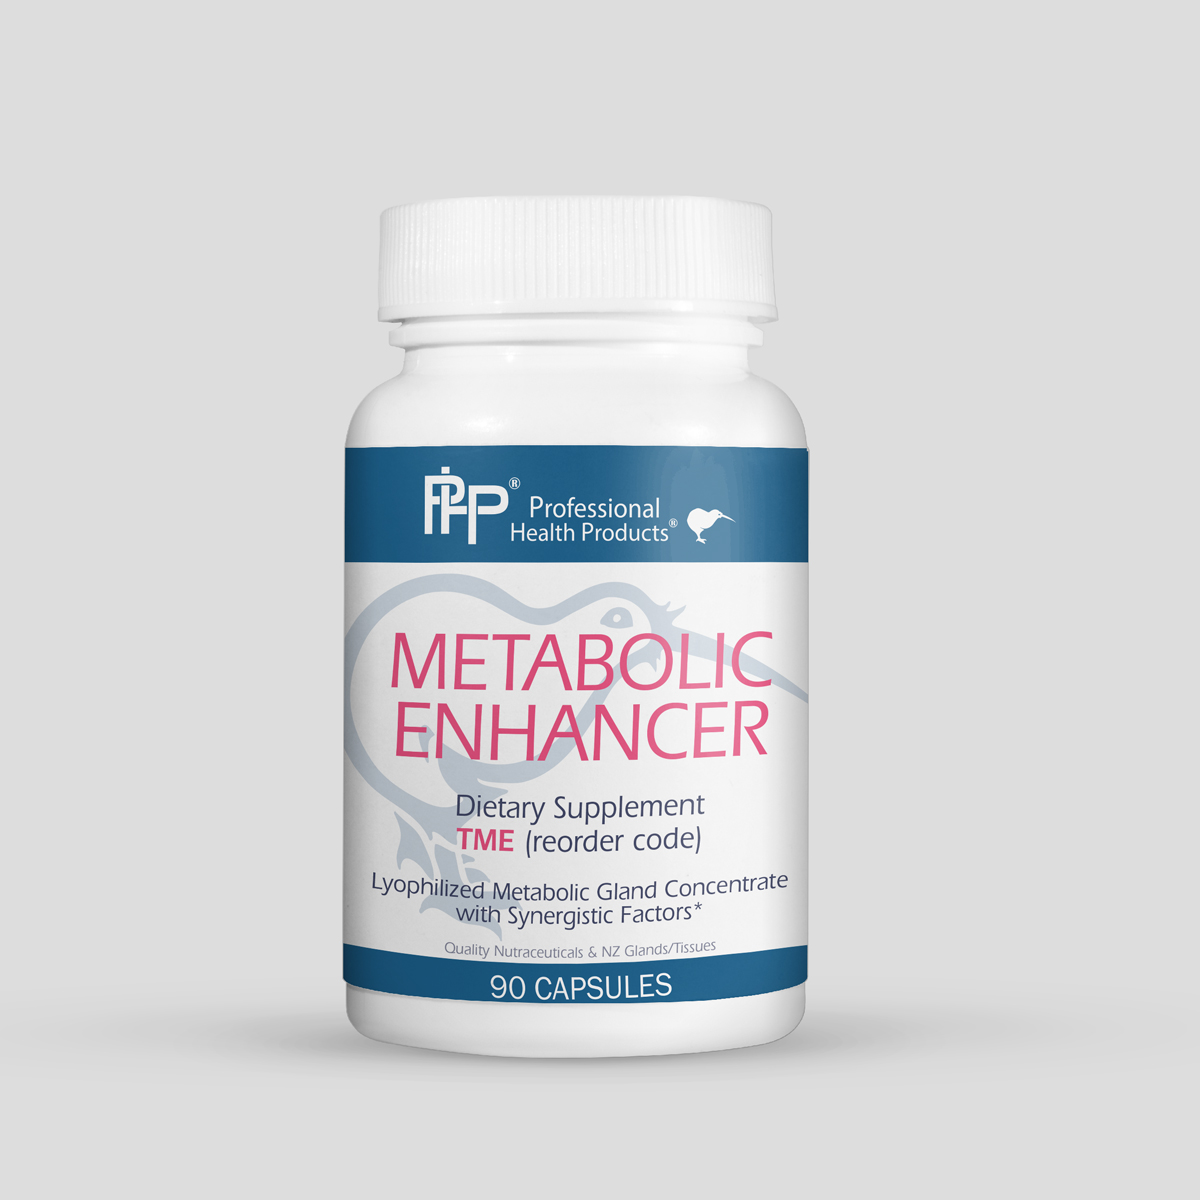 Natural metabolic enhancer